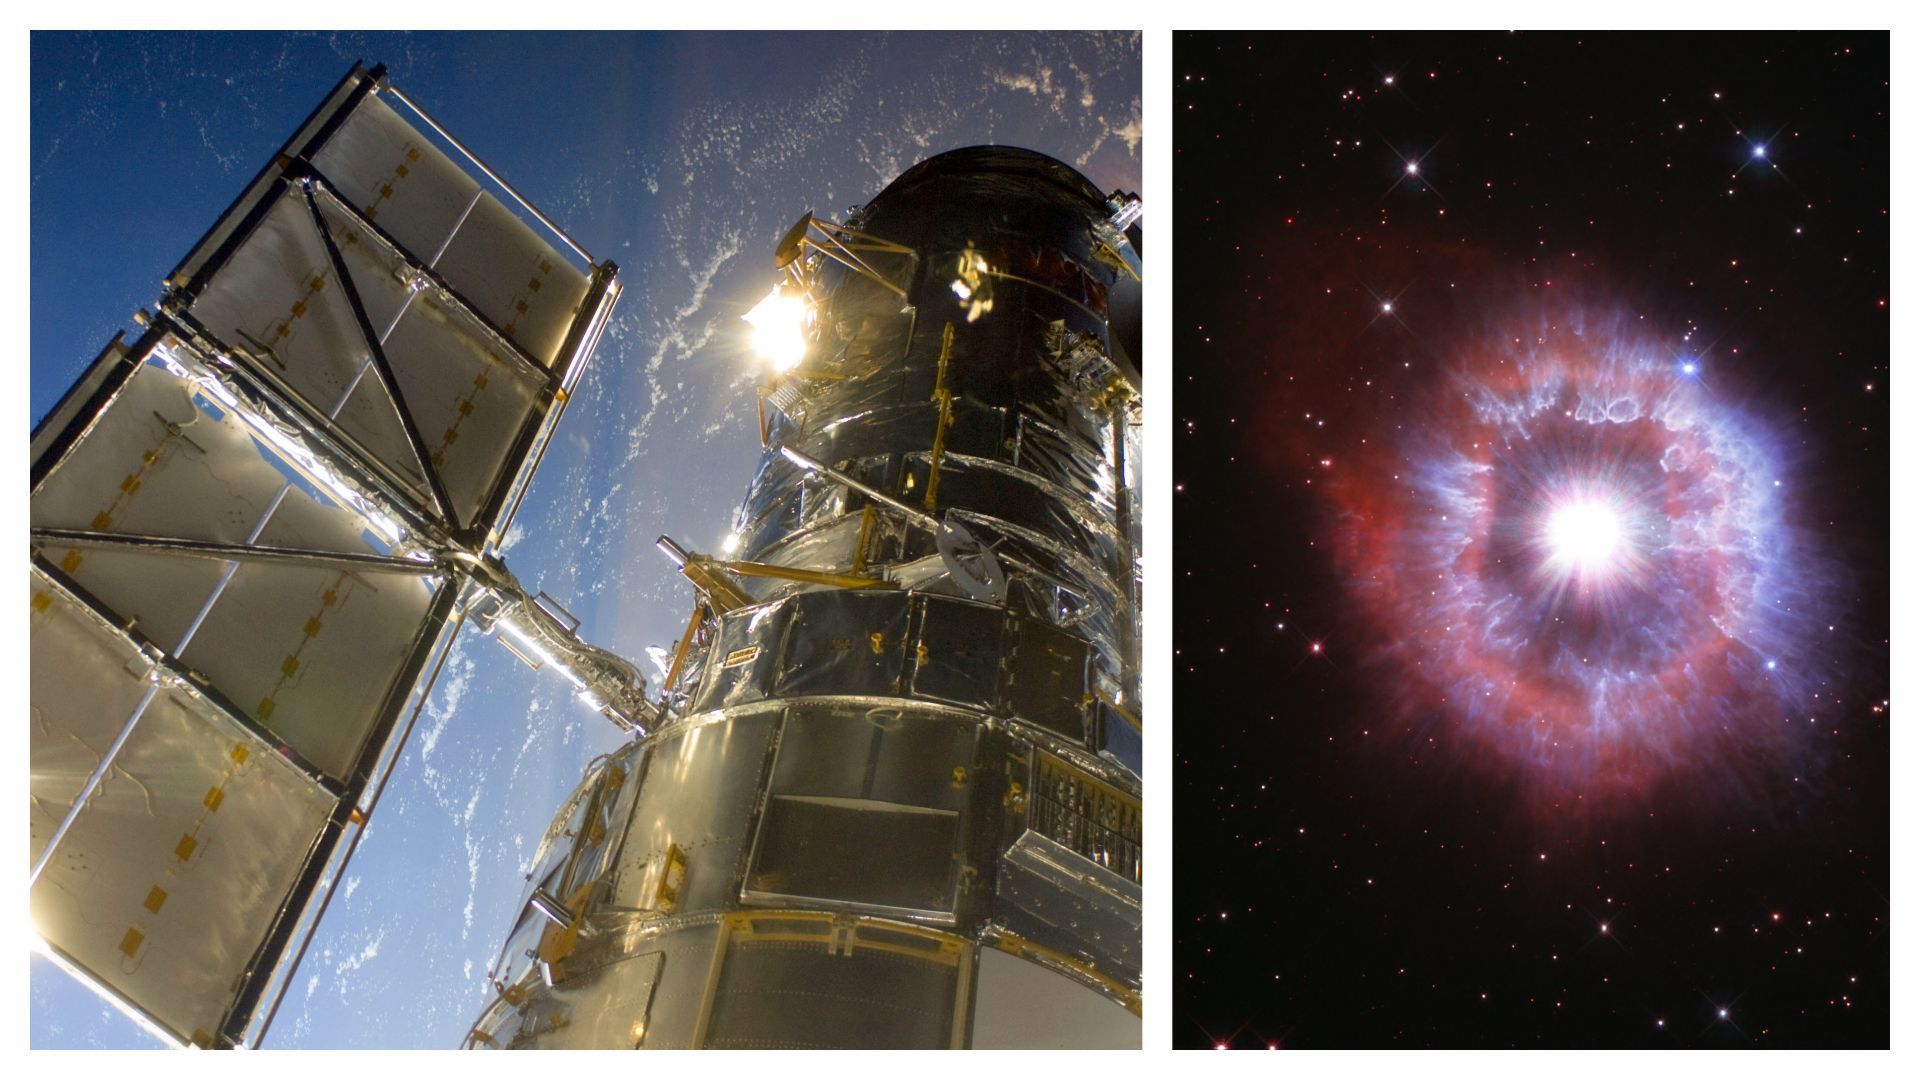 Image d'Hubble en 2009 et capture d'une image d'Hubble au printemps 2021